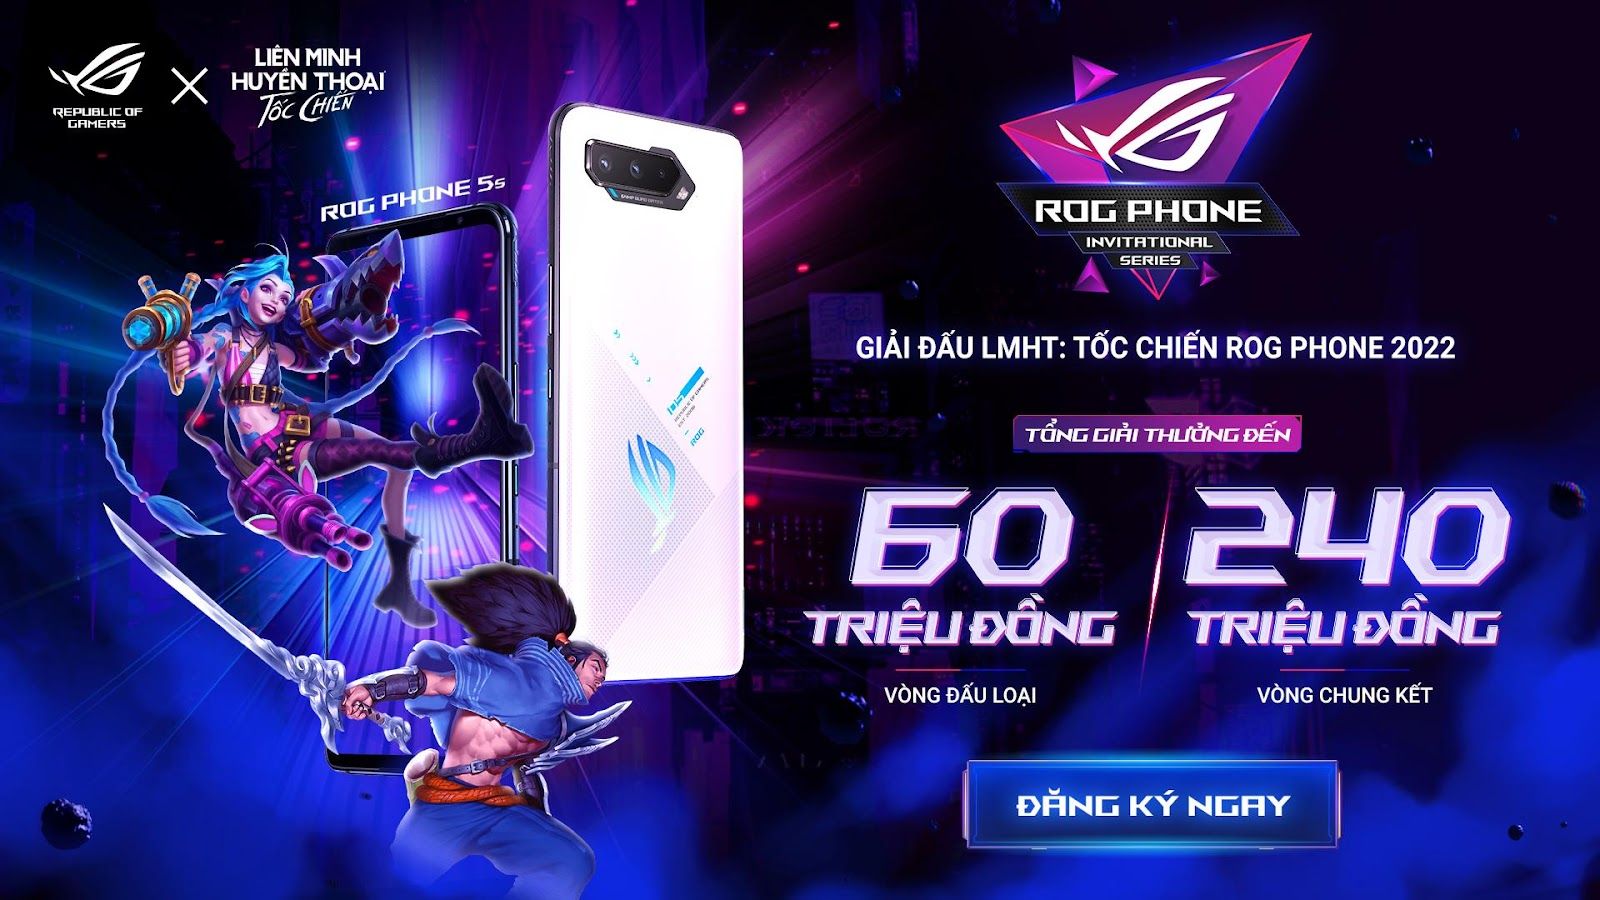 ASUS Republic of Gamers và VNG công bố giải đấu ROG Phone Invitational Series 2022 bộ môn thể thao điện tử Liên Minh Huyền Thoại: Tốc Chiến